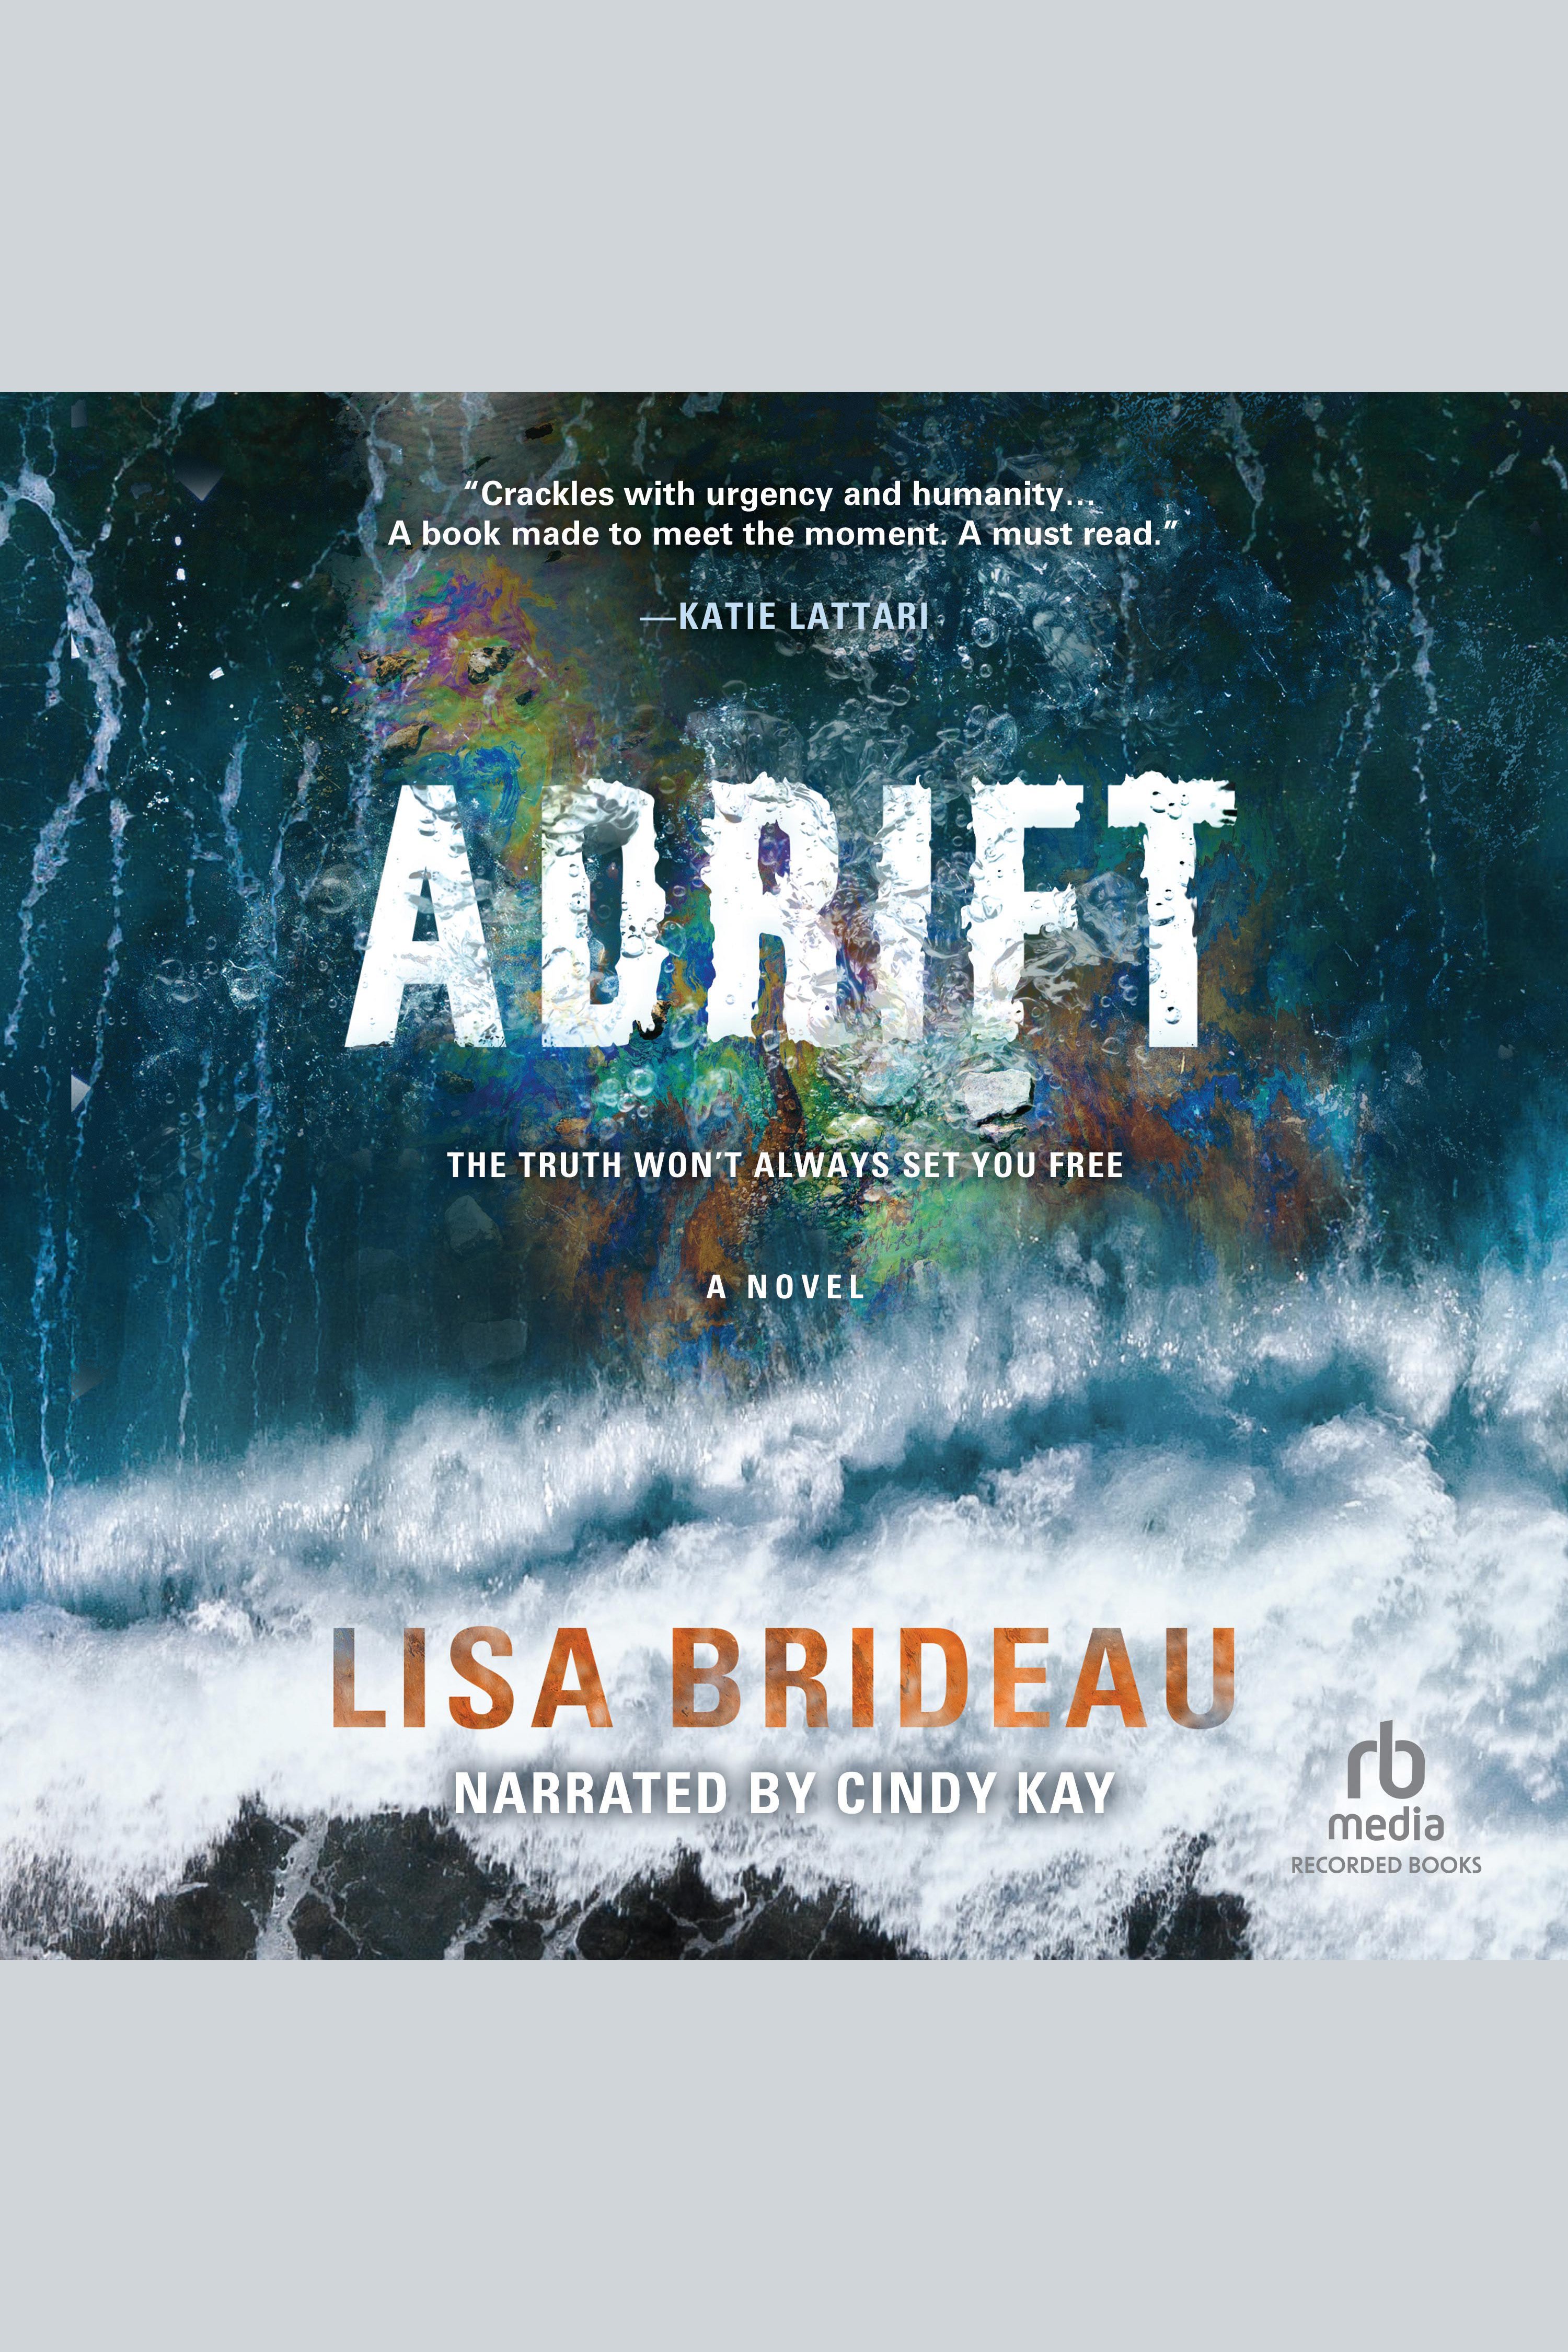 Adrift cover image